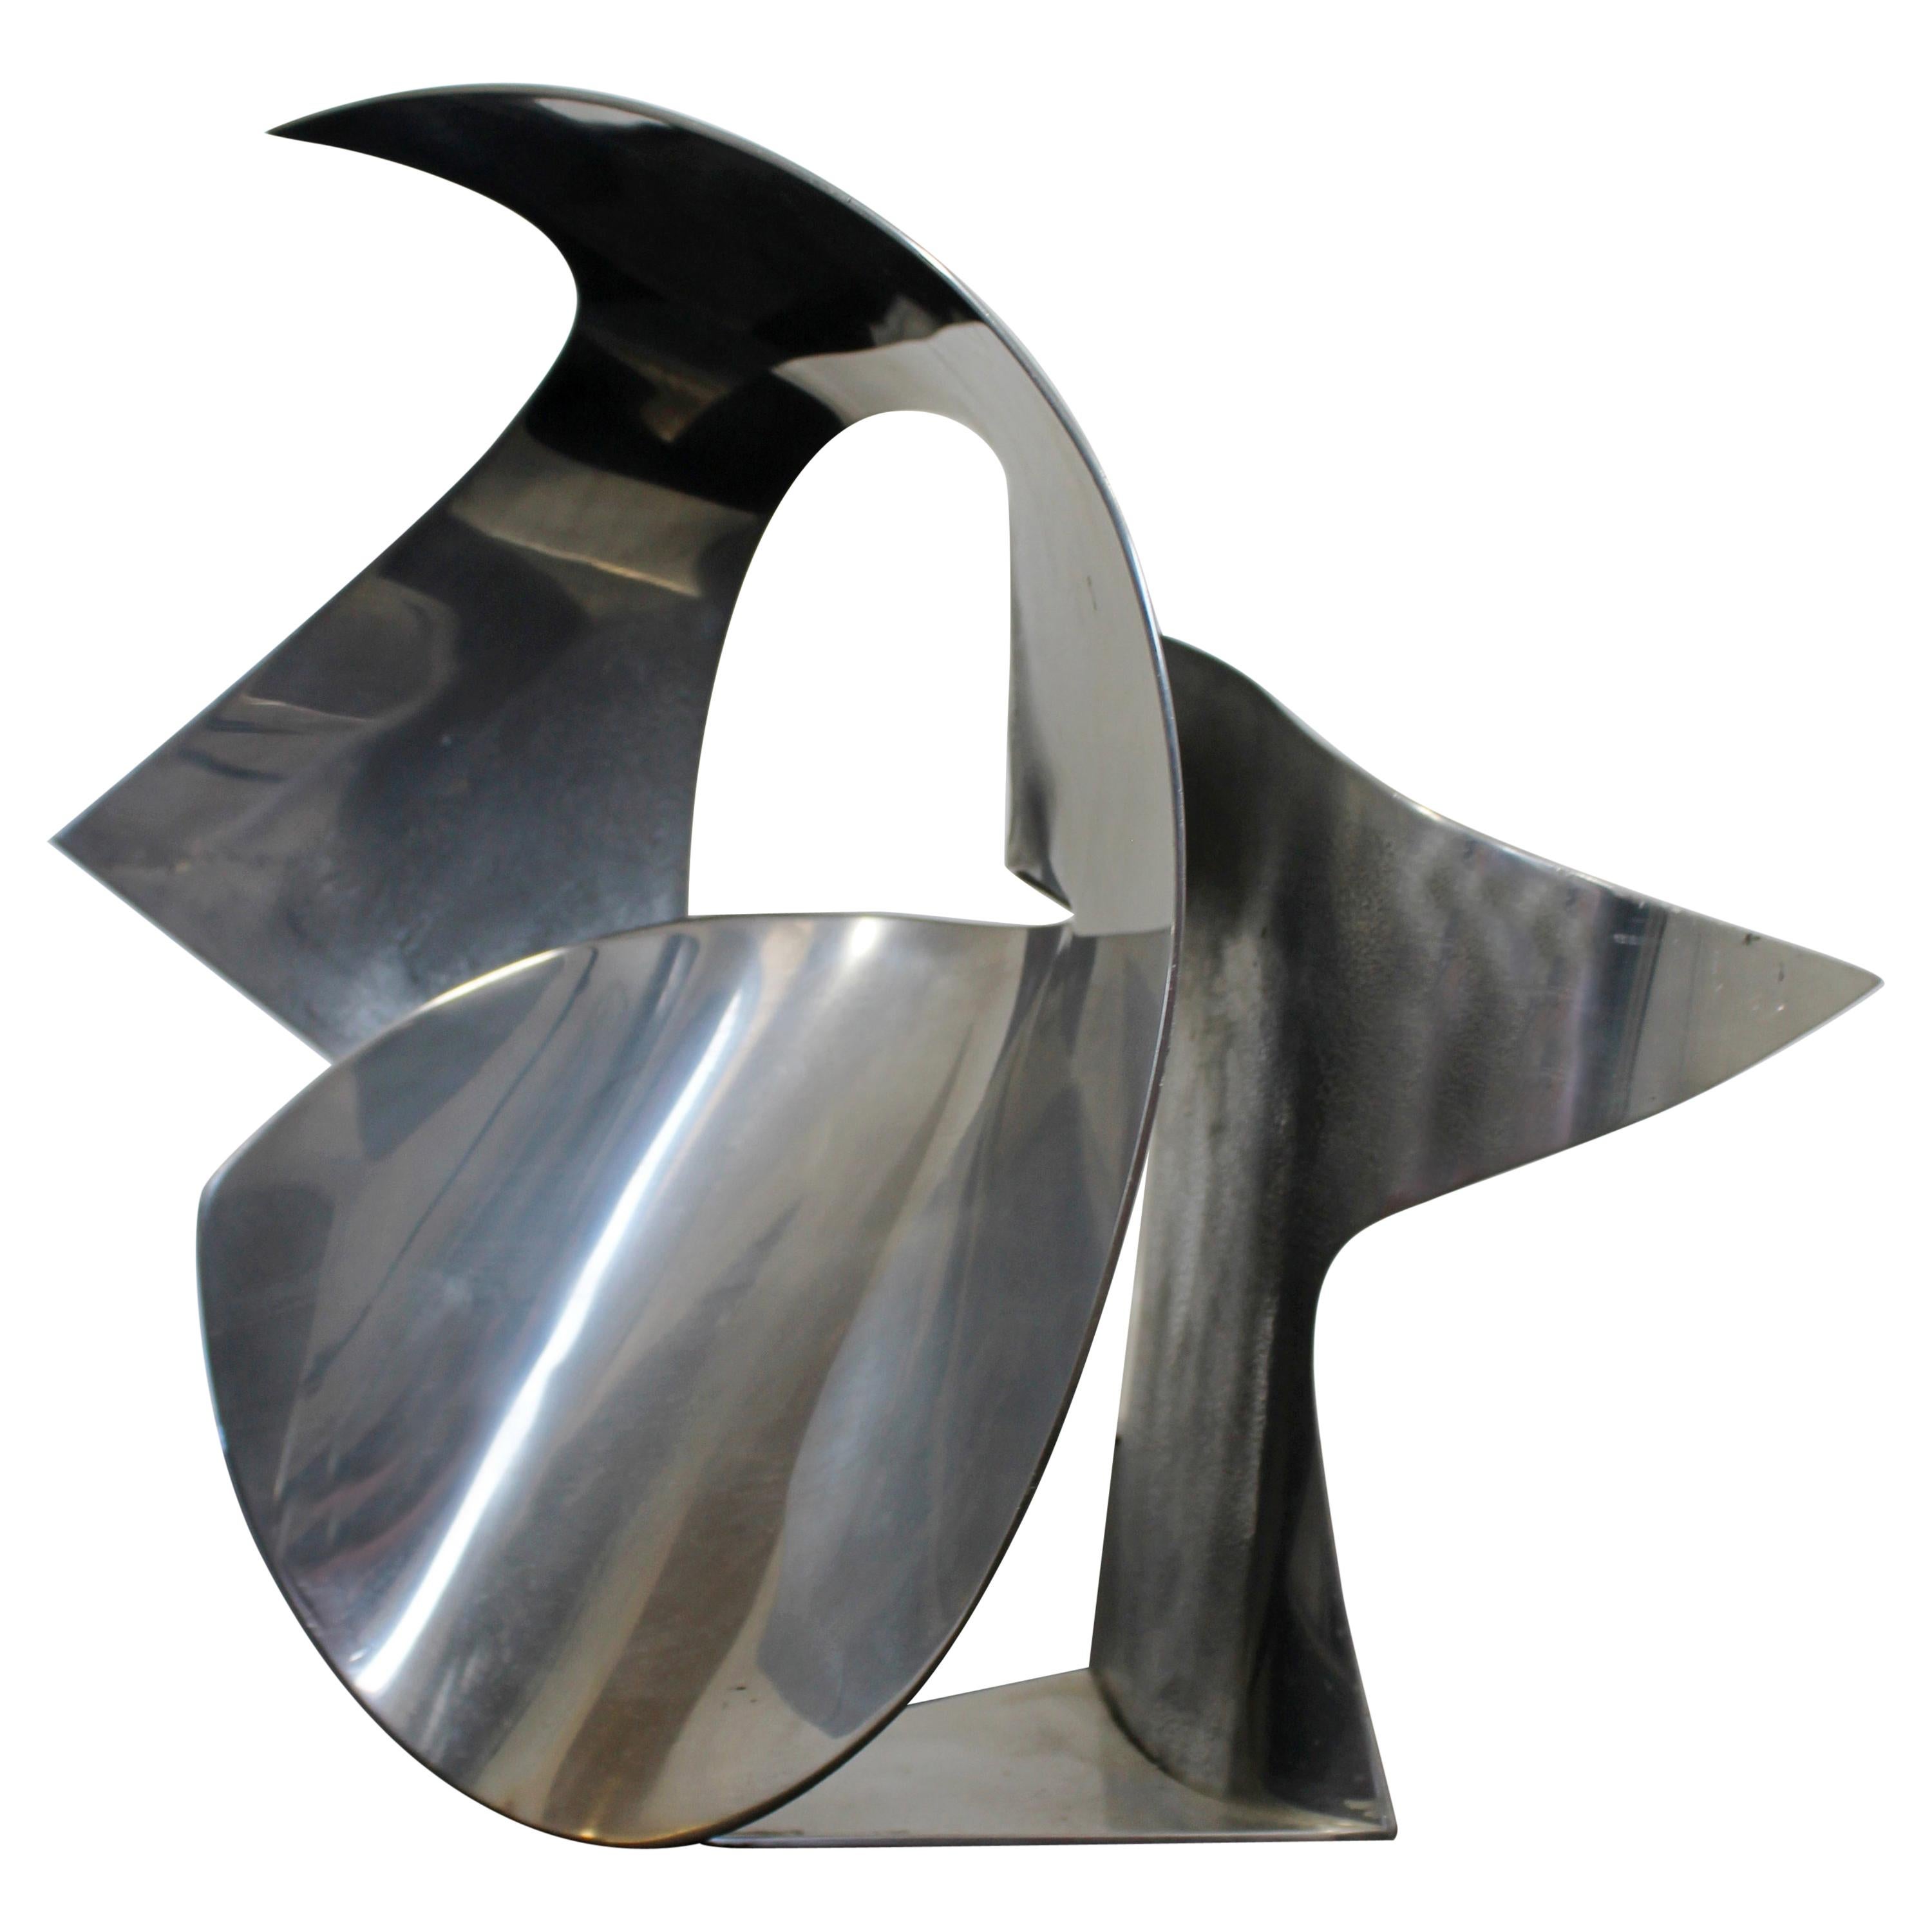 James Nani Gumie 75 Abstrakte kreisförmige Aluminiumskulptur